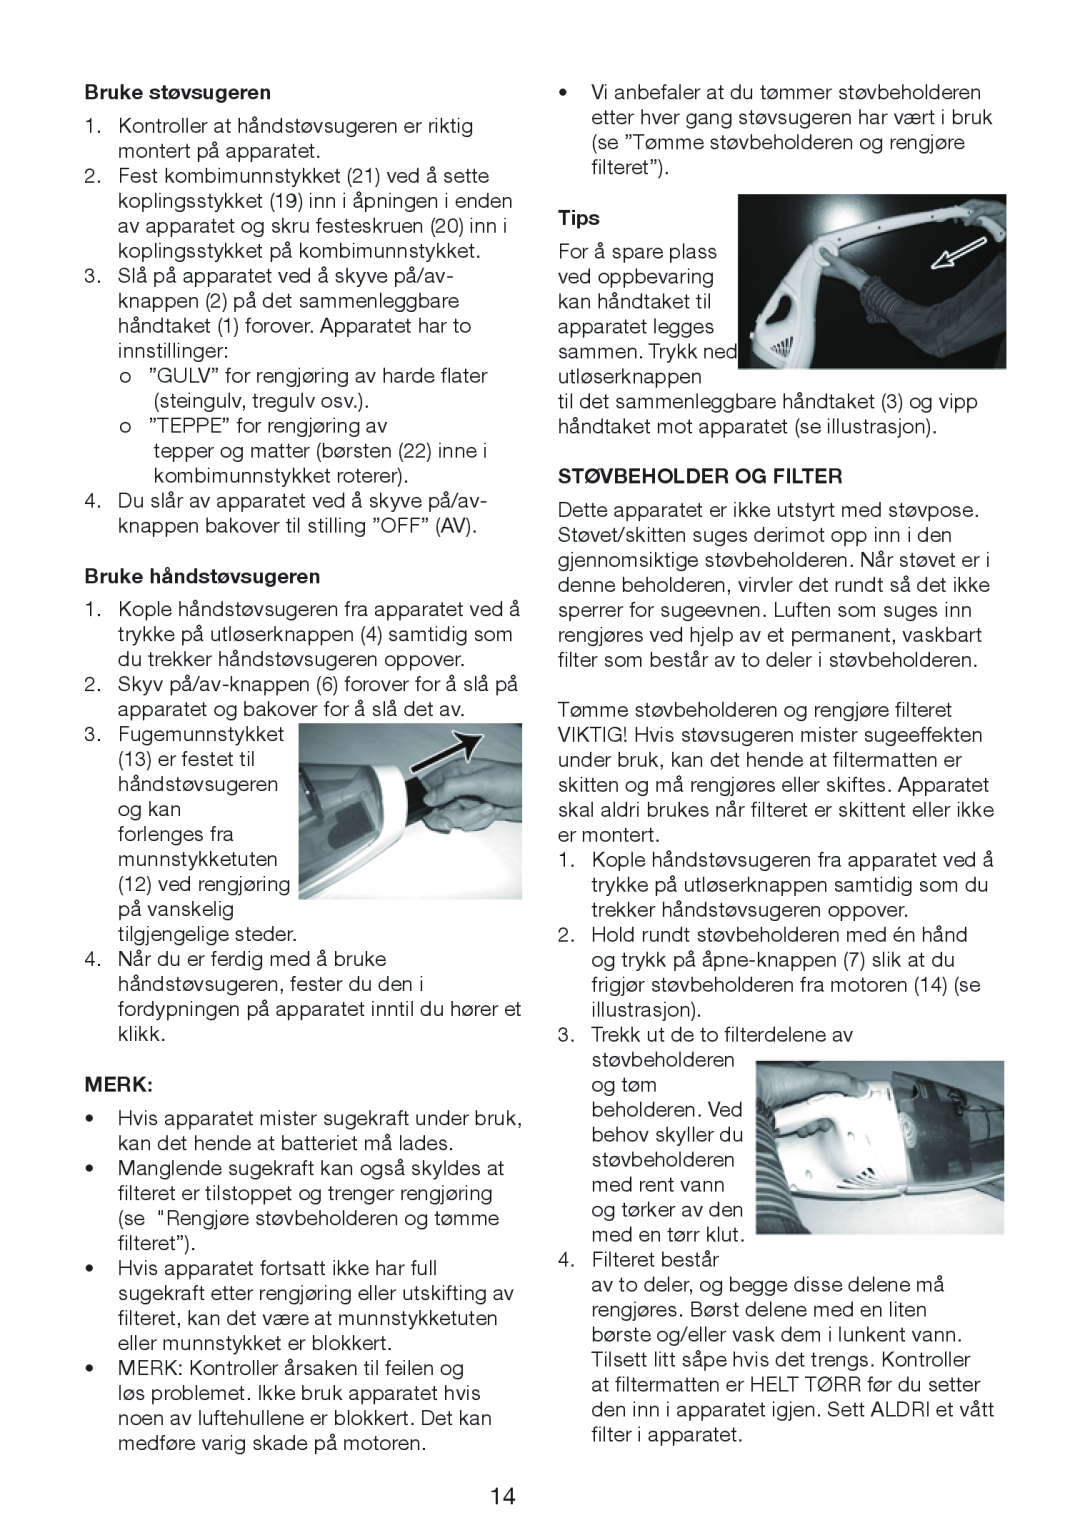 Melissa 640-132 manual Bruke støvsugeren, Bruke håndstøvsugeren, Merk, Tips, Støvbeholder Og Filter 